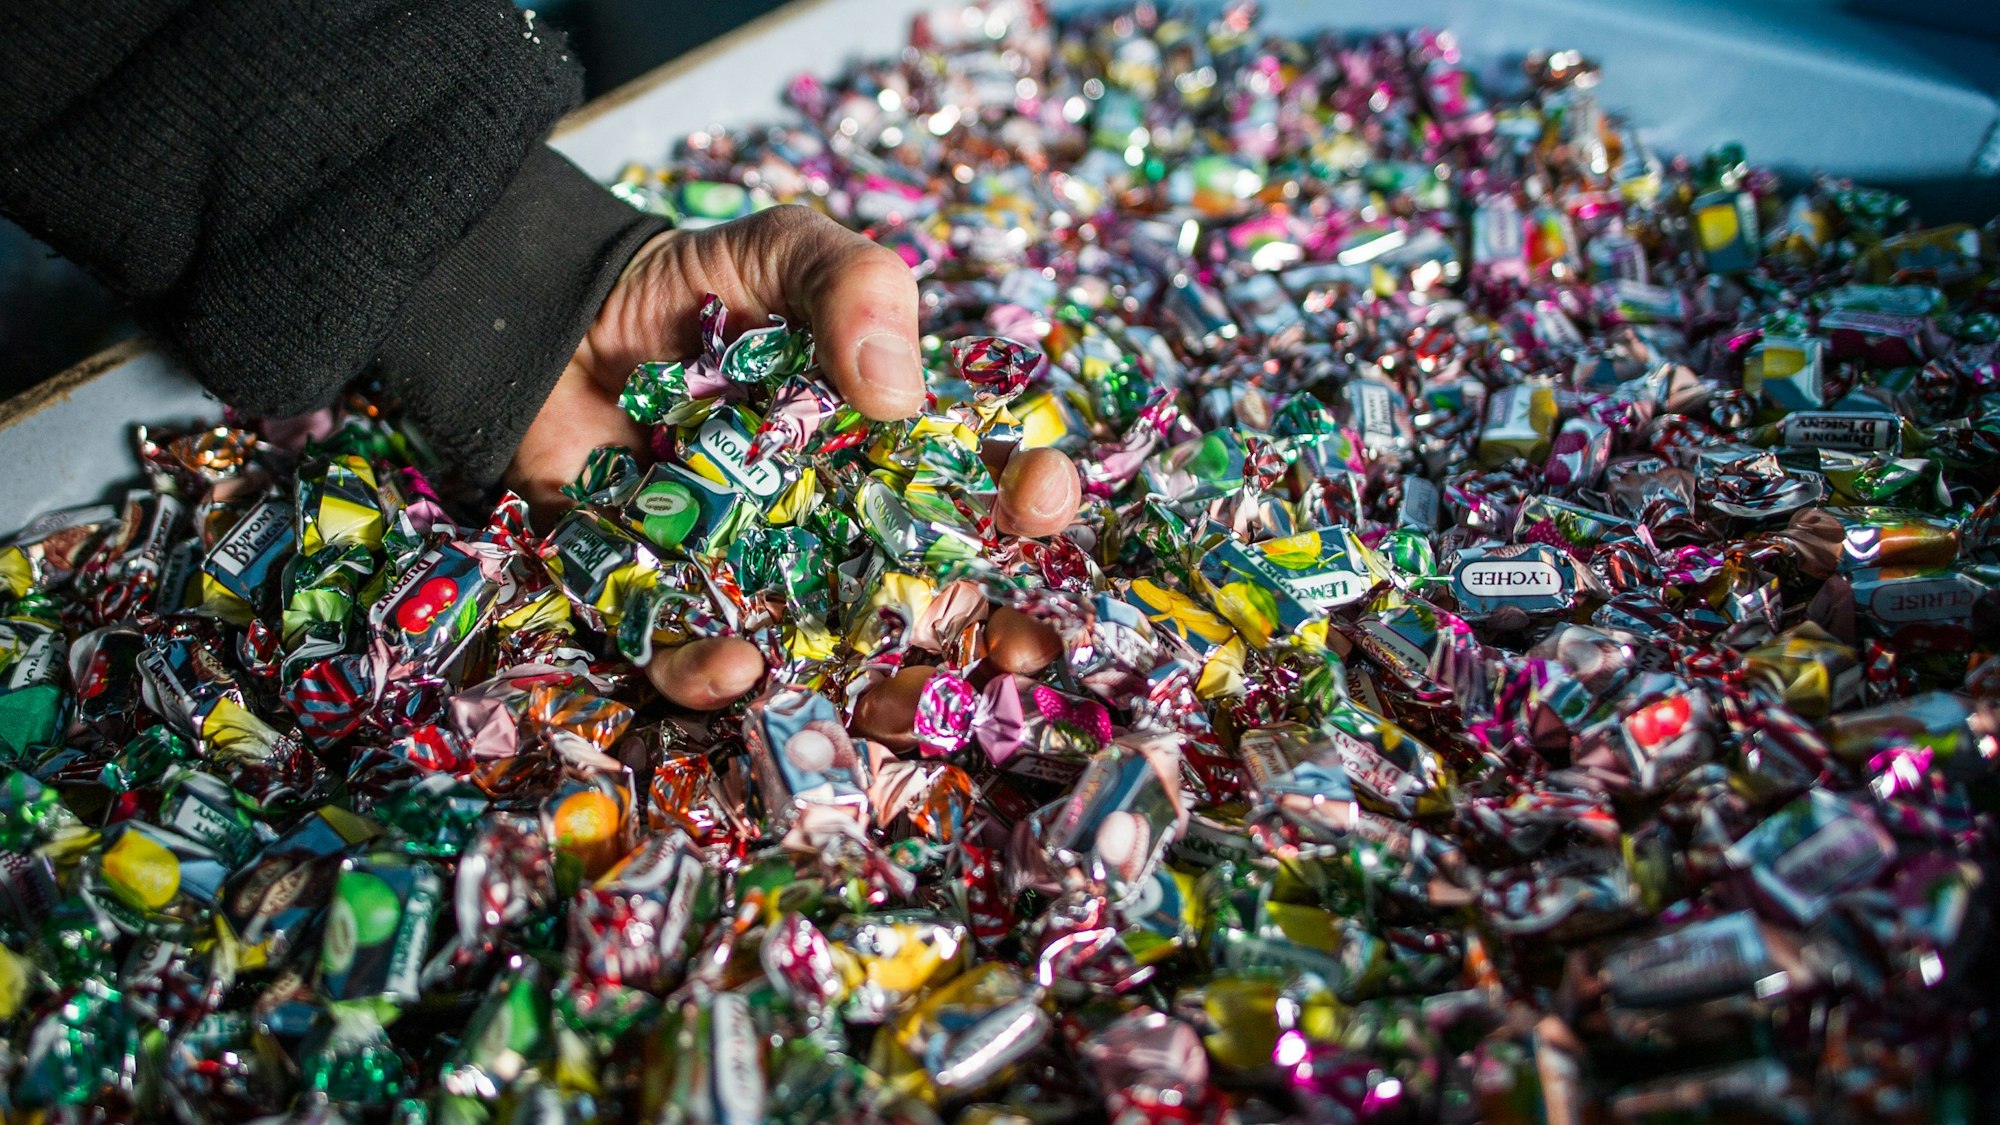 Eine Hand greift auf einem Karnevalswagen nach Süßigkeiten.